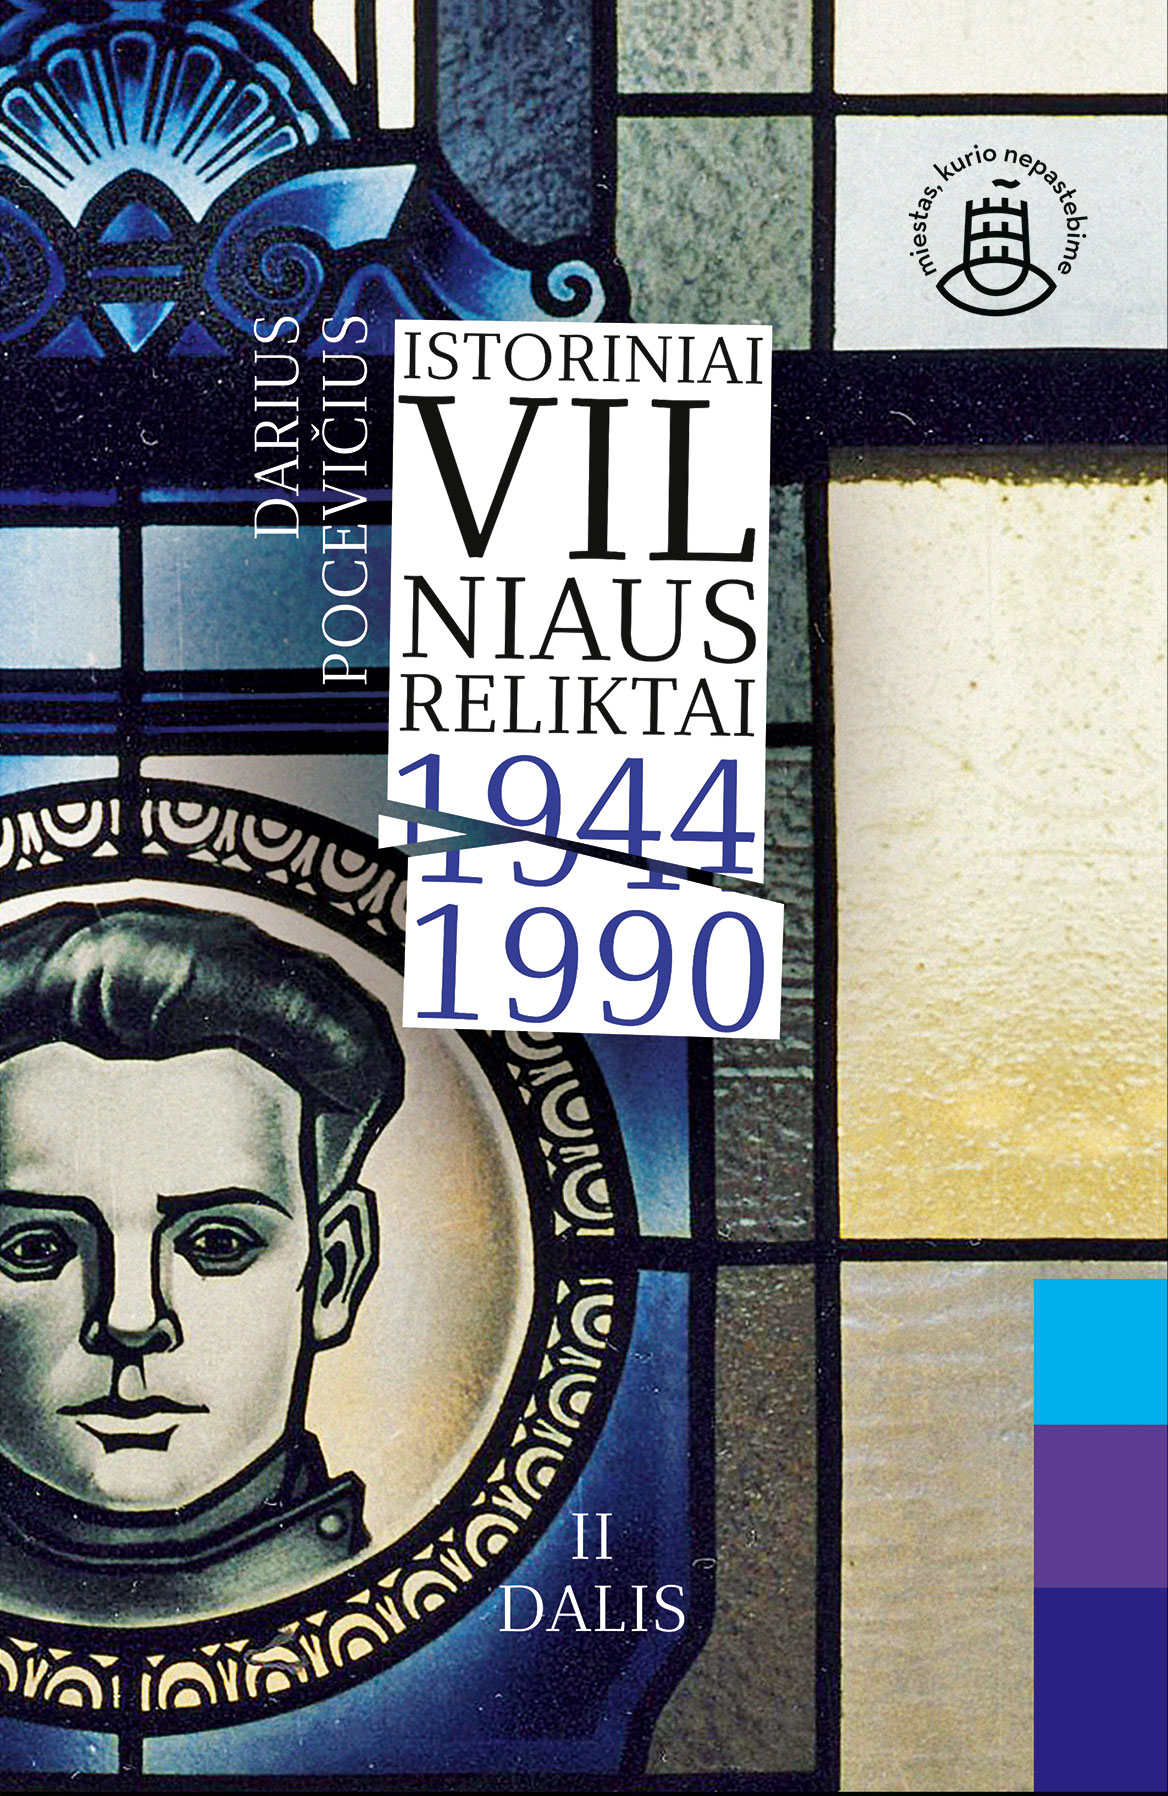 Istoriniai Vilniaus reliktai. 1944–1990. ll dalis